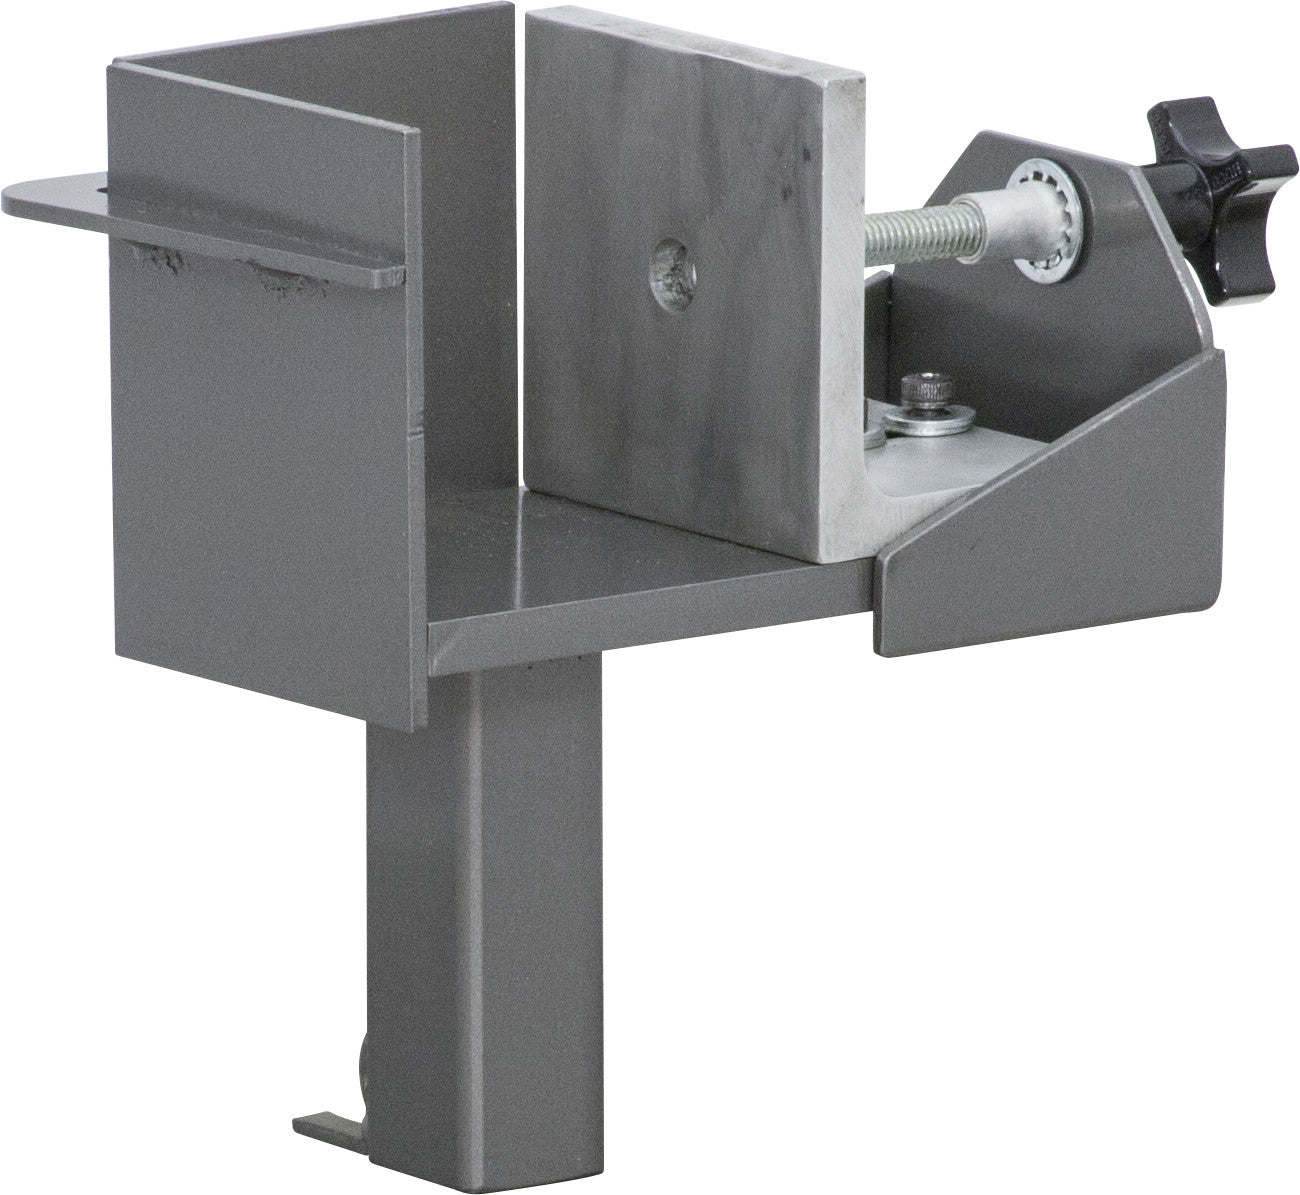 Hix Automatic Clamshell 15x15 Heat Press